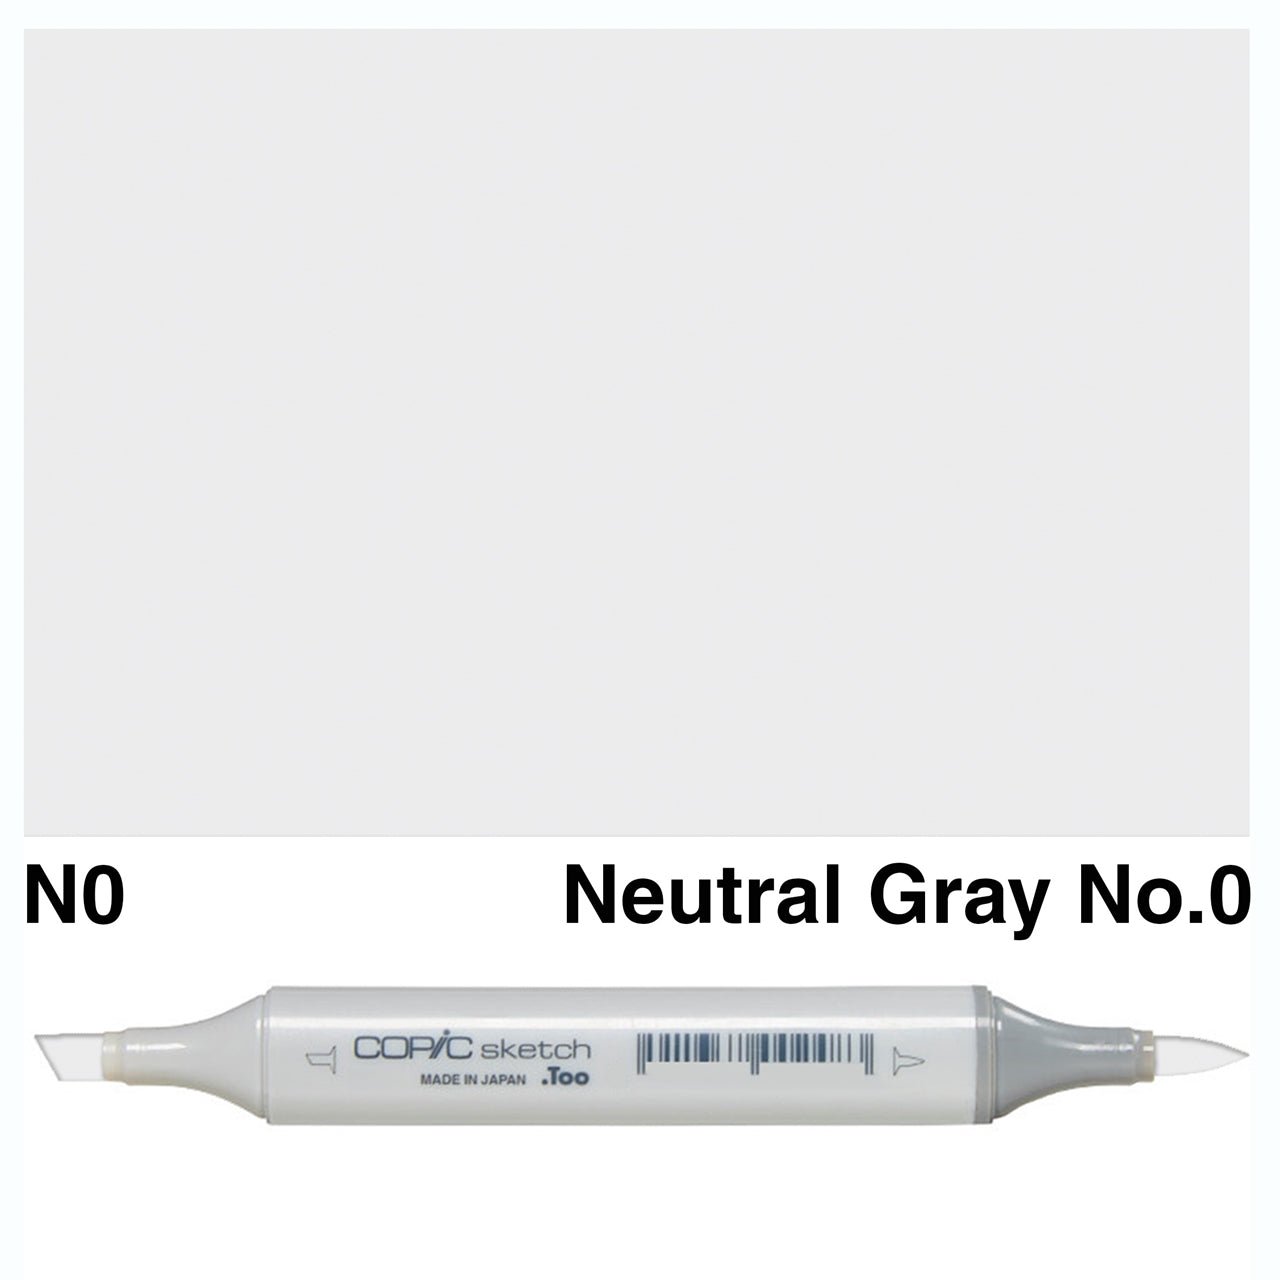 Copic Sketch N0 Neutral Gray No.0 - theartshop.com.au